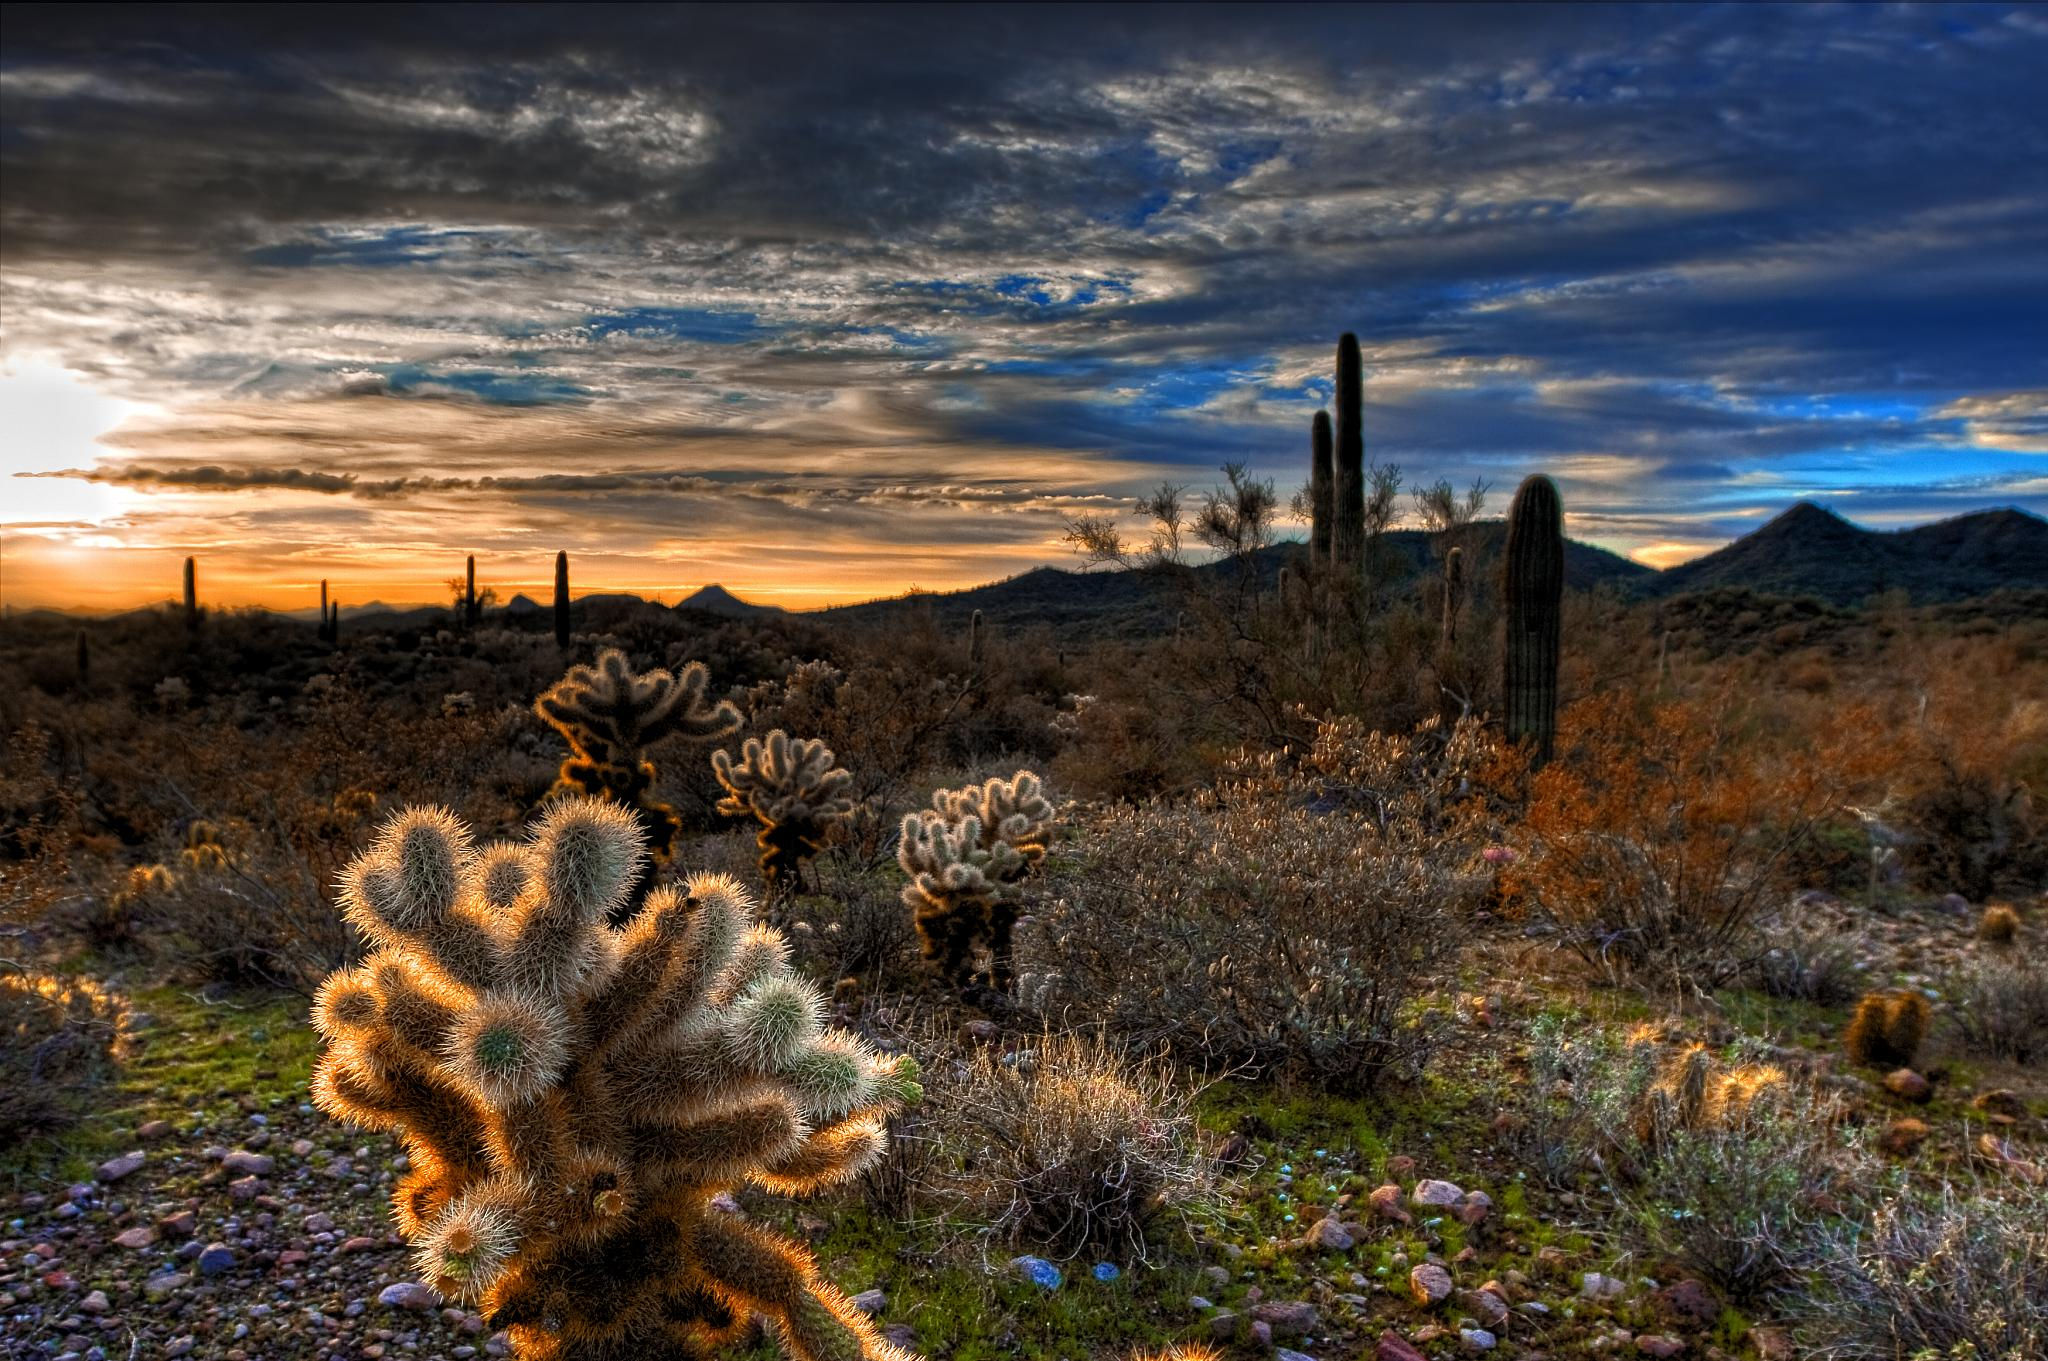 2048x1361 Wallpaper : Arizona, cactus, cloud, clouds, cacti, sunrise, jumping, desert, saguaro, cholla 945296 HD Wallpapers